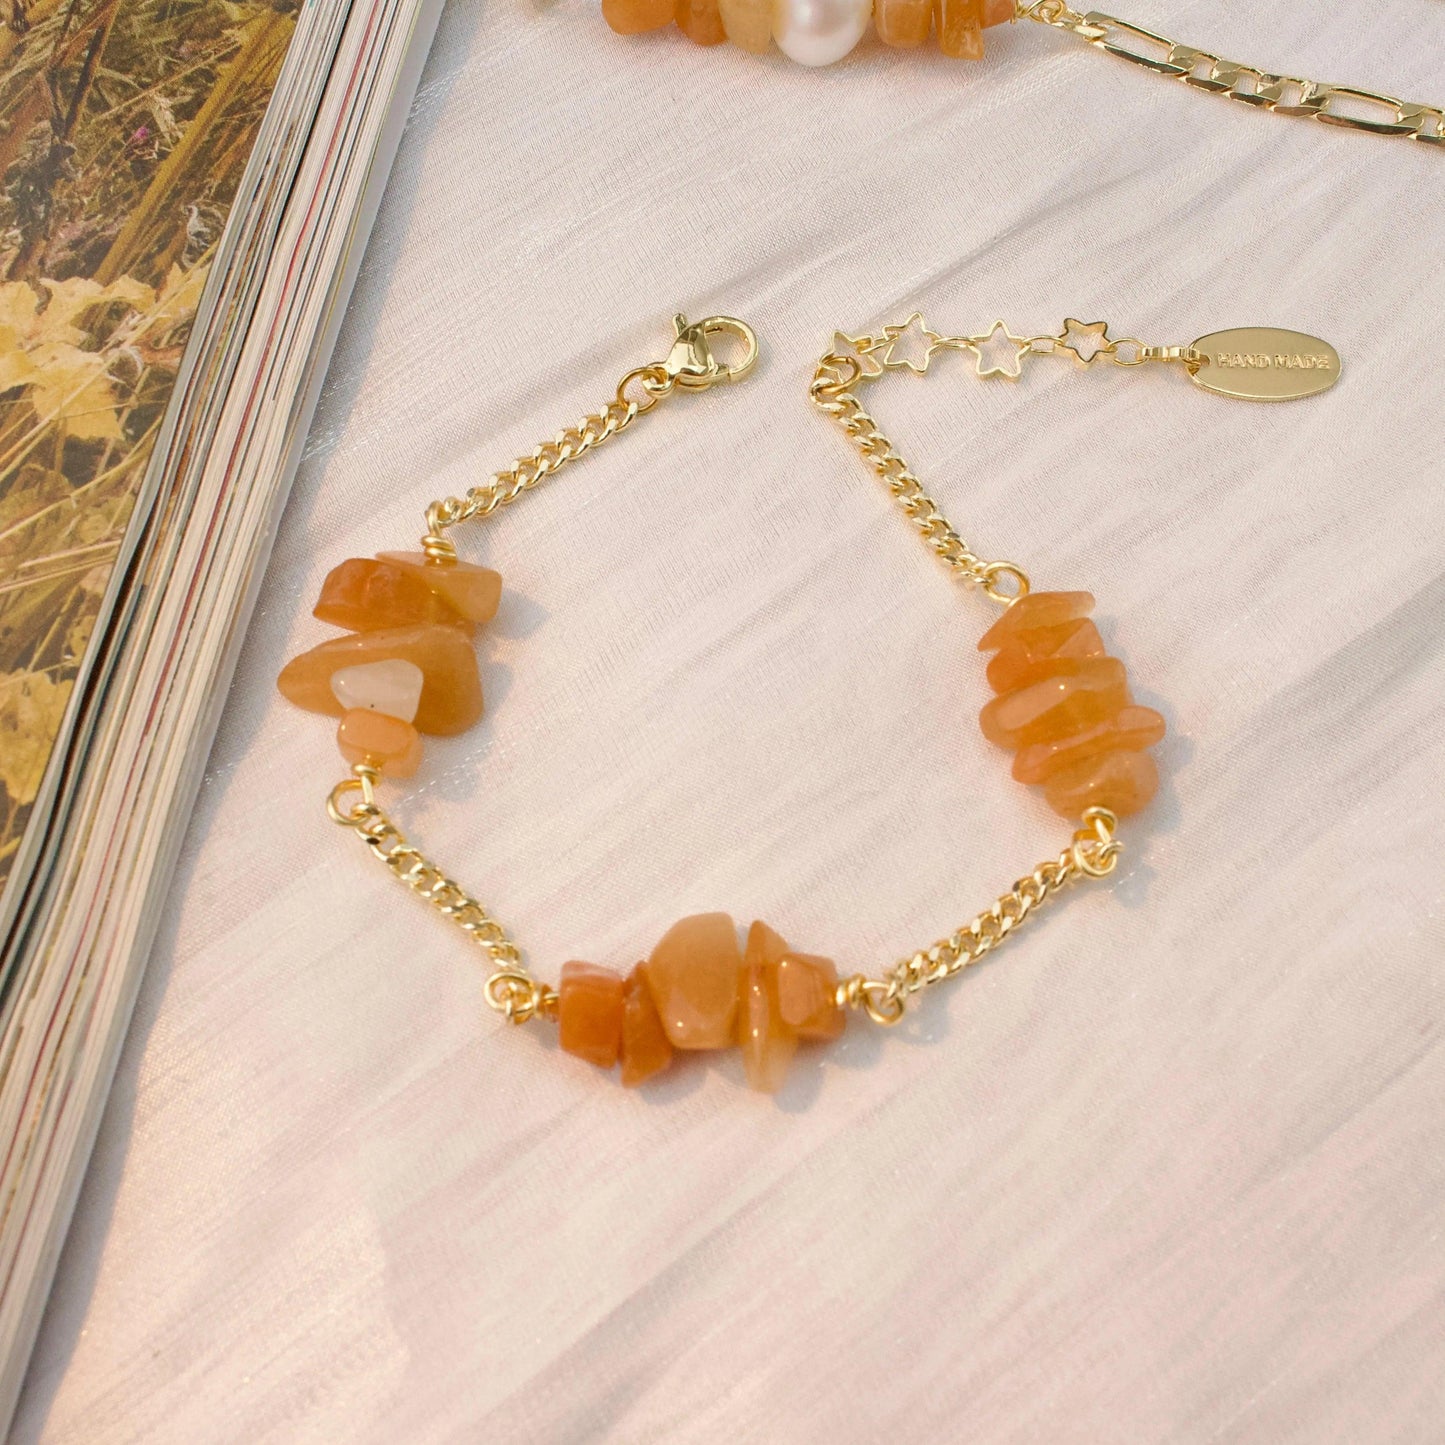 Der orangene Traum Schmuck Online ¦ JK Jewelry & Accessories